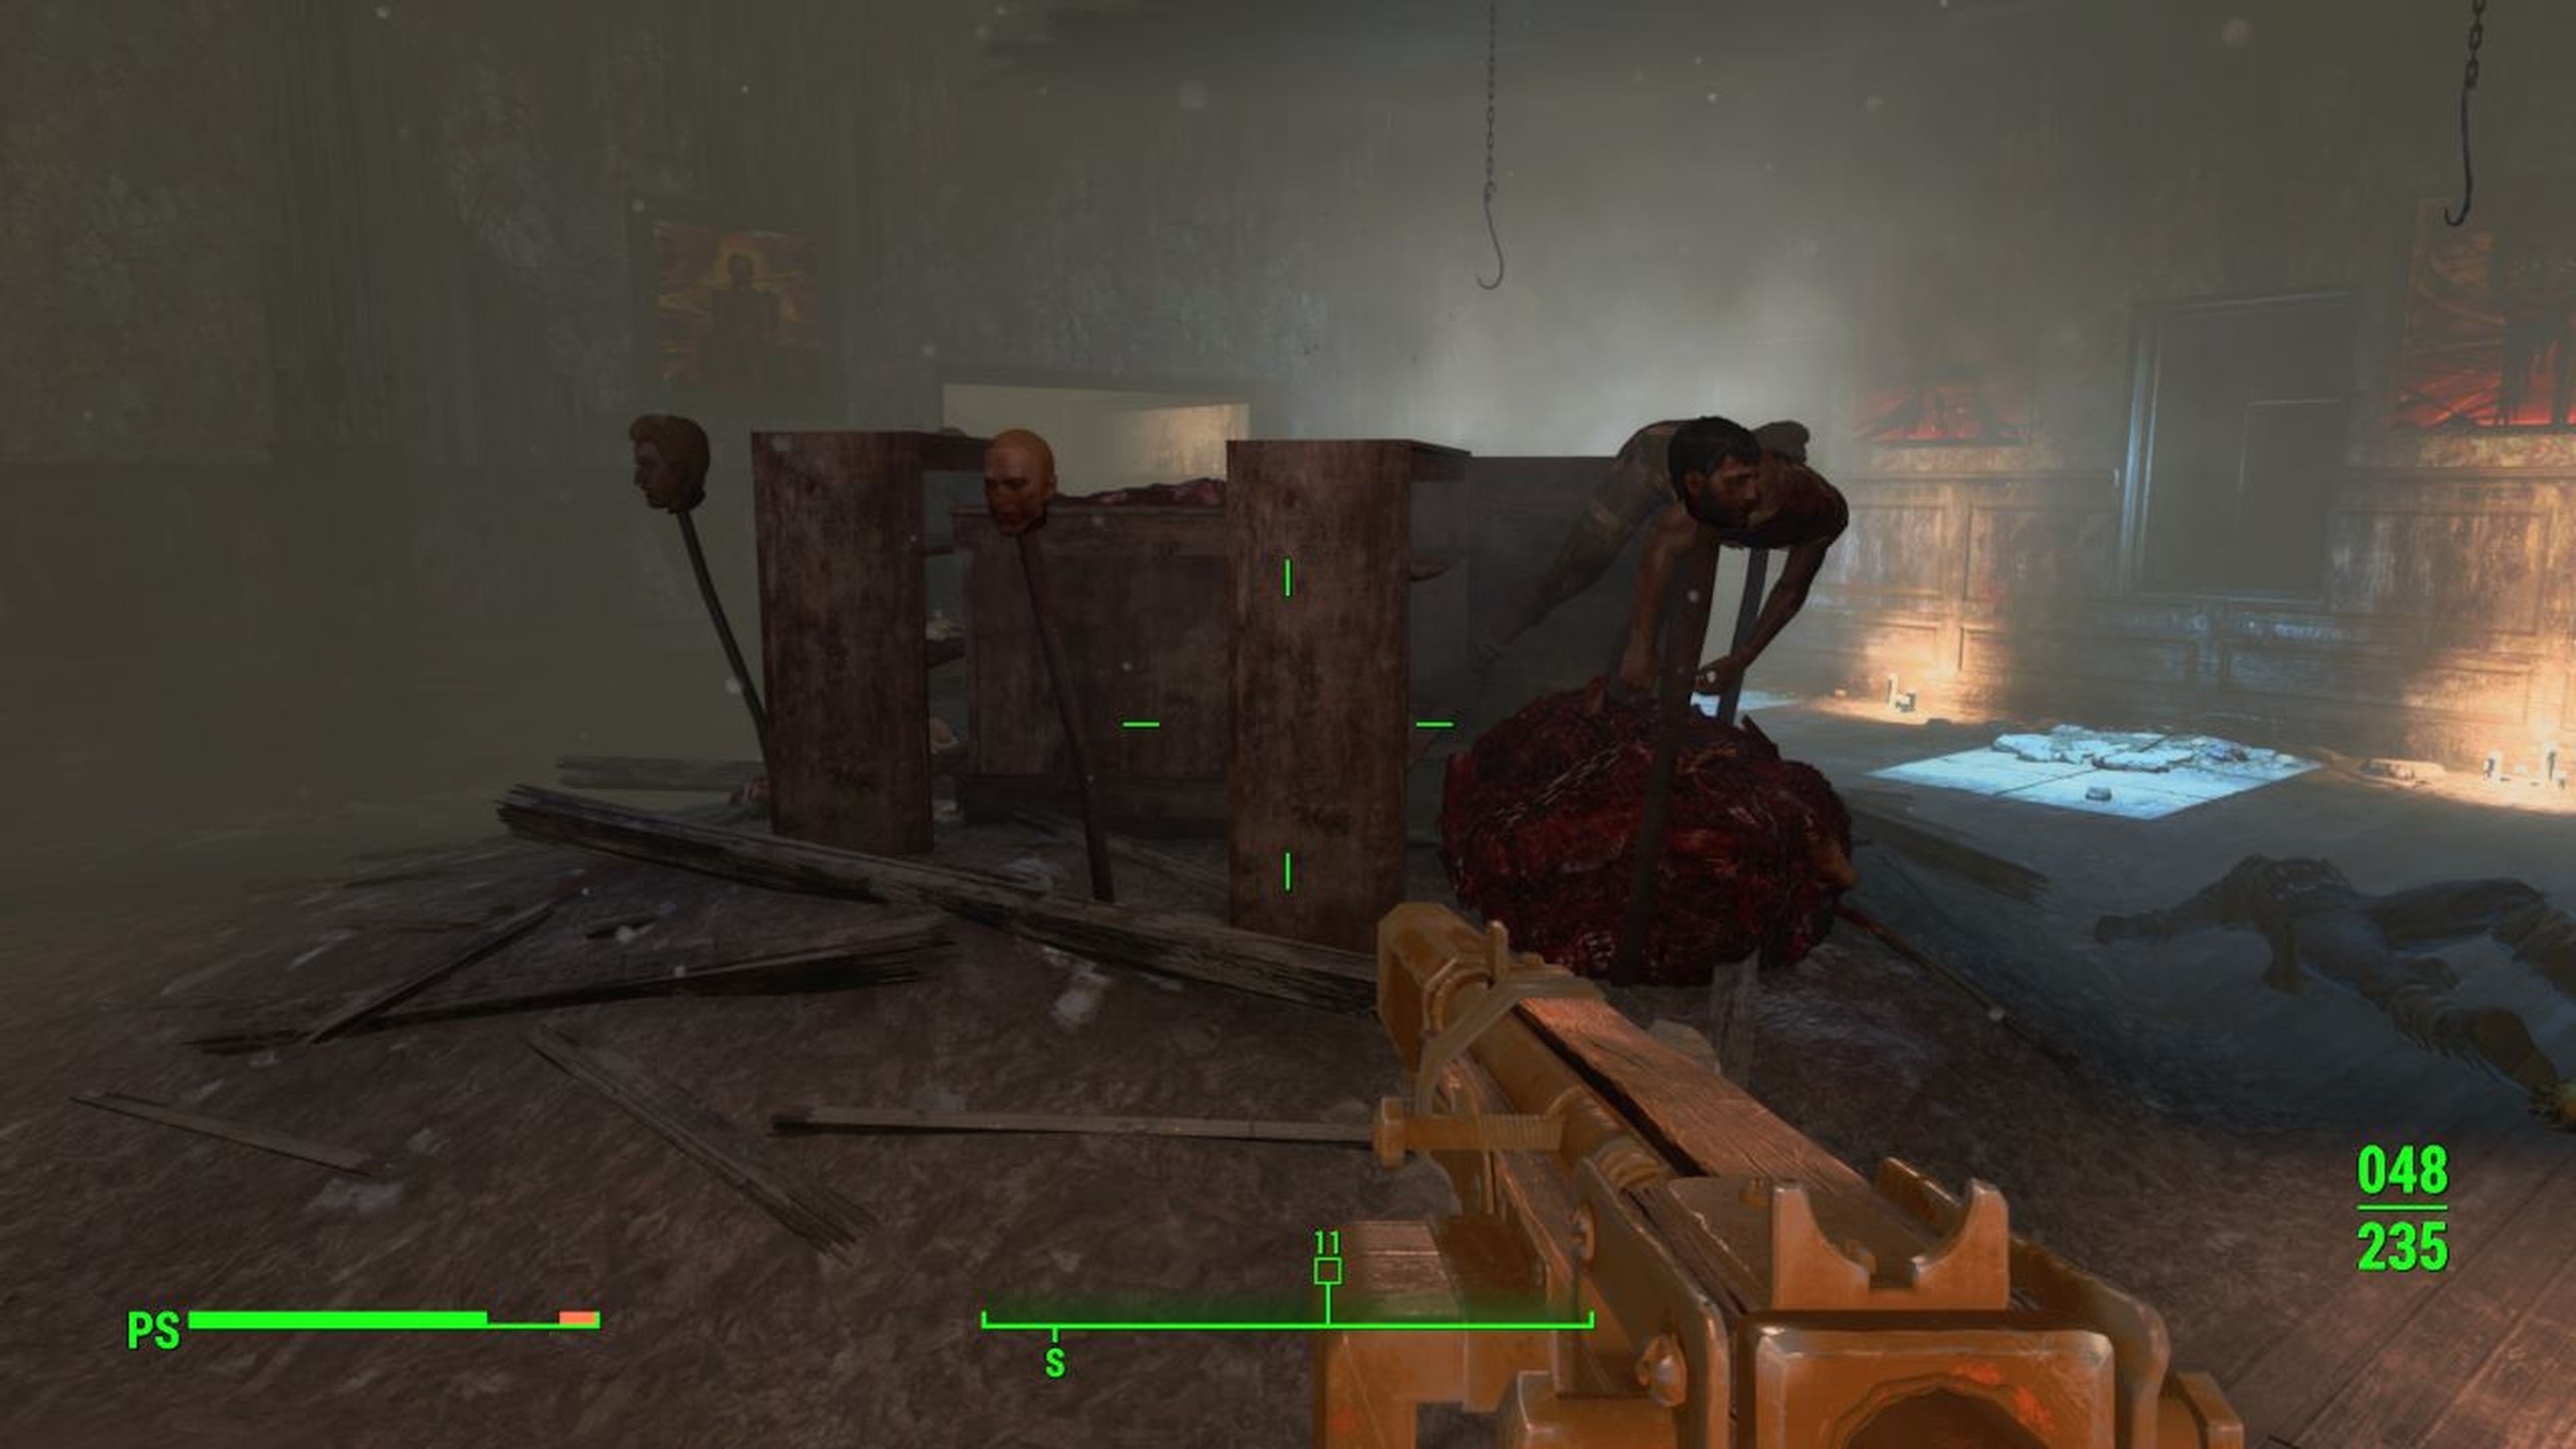 Fallout 4 Cómo encontrar la Galería Pickman